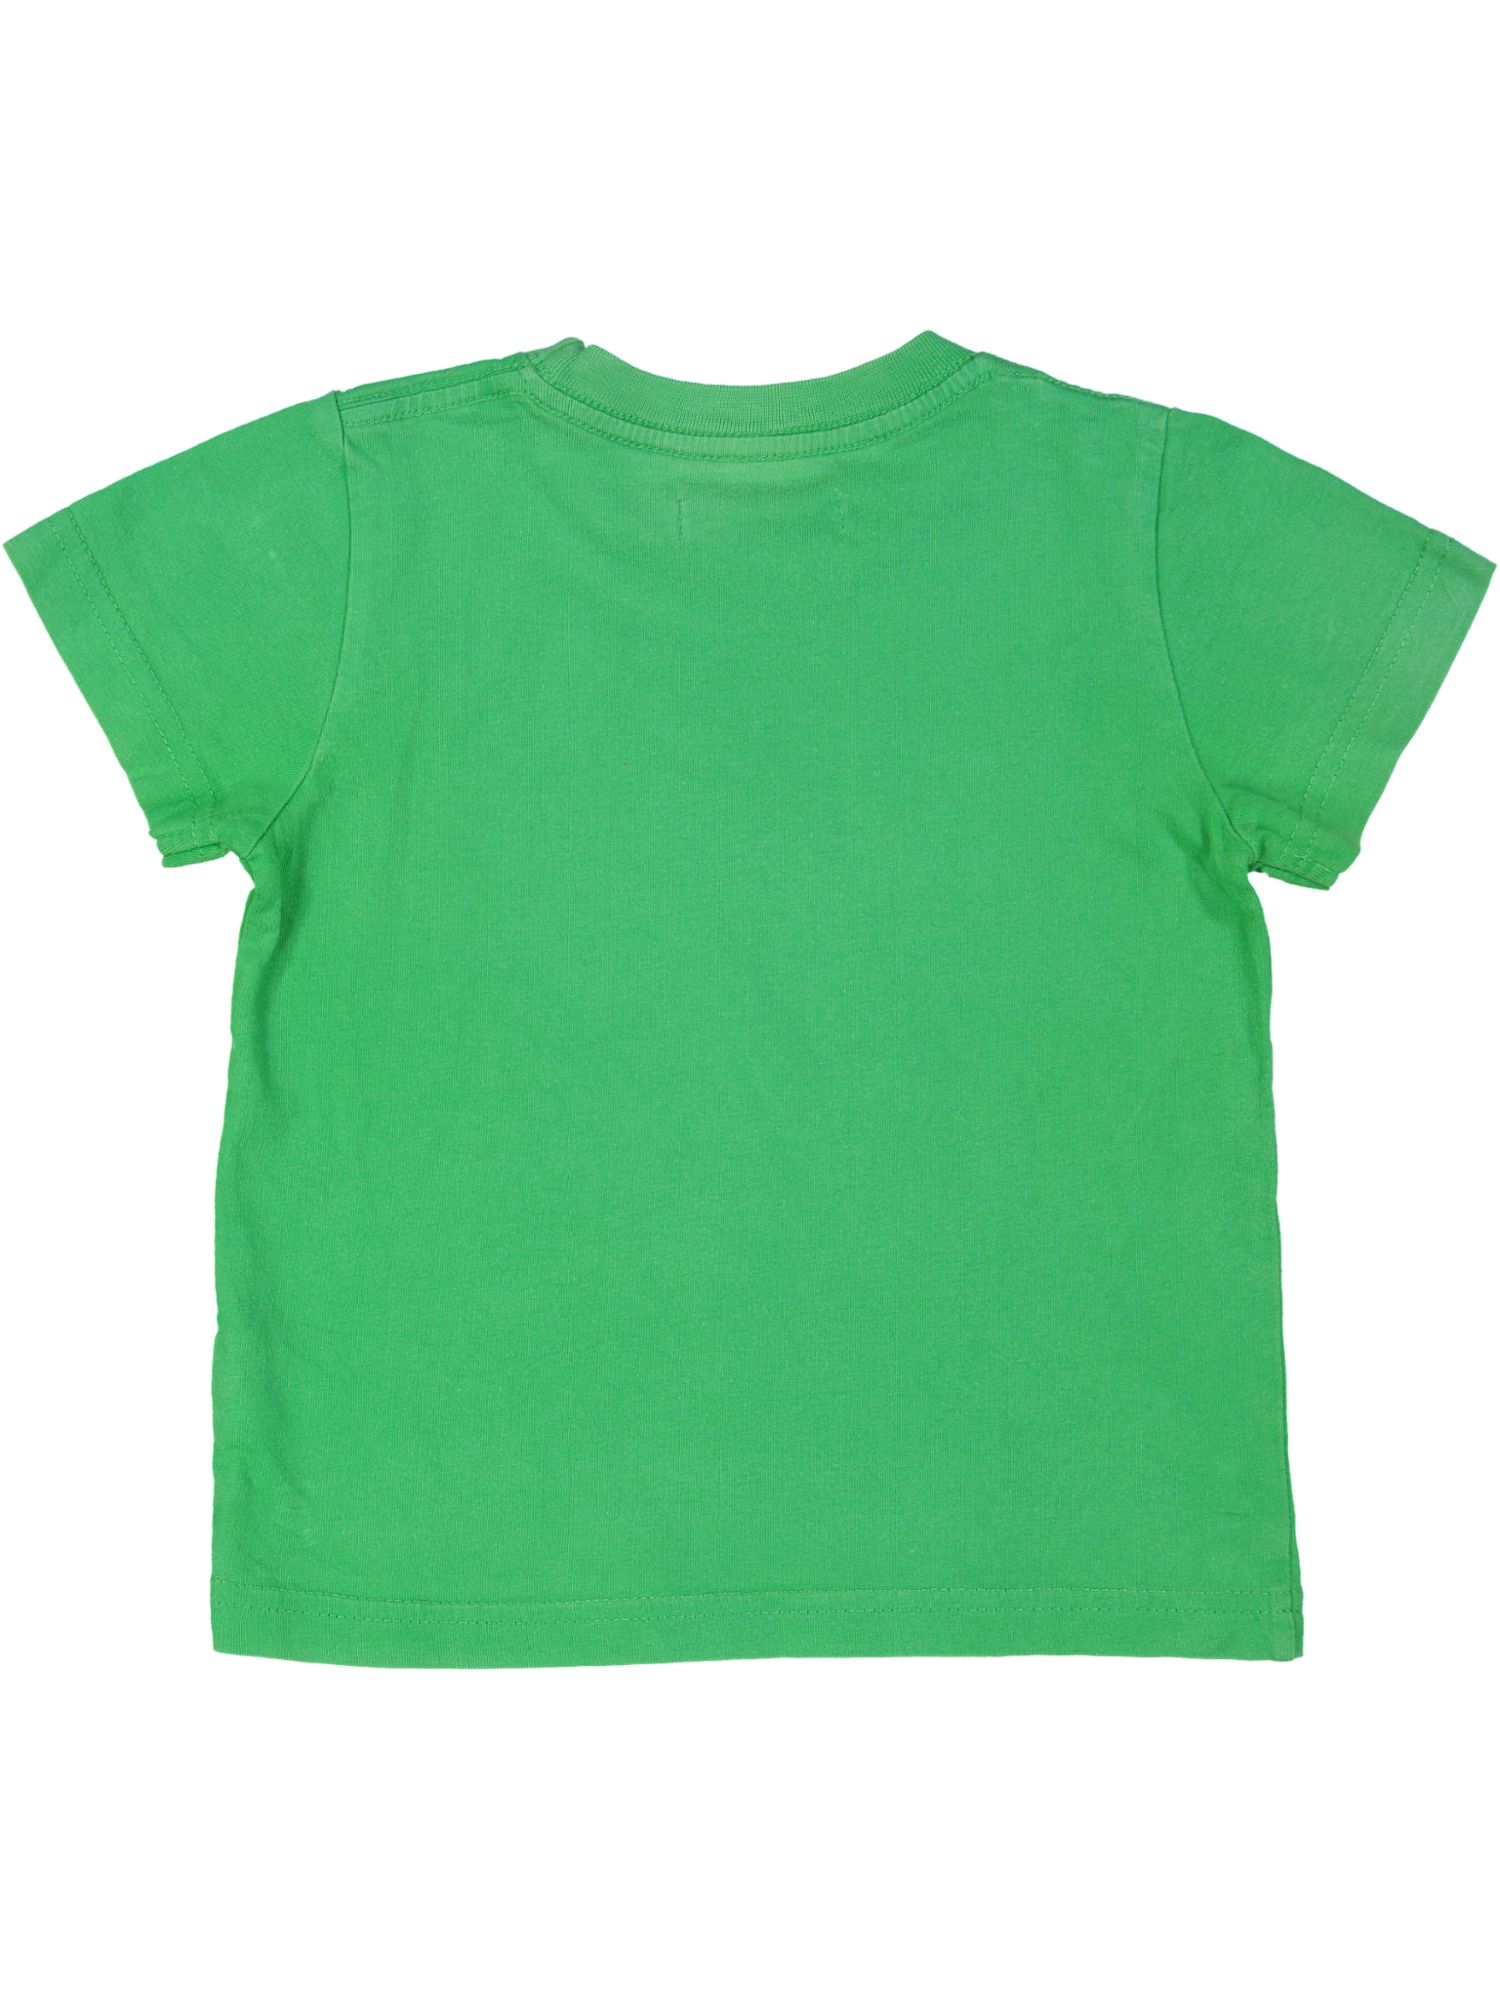 t-shirt groen pijlen 03j .